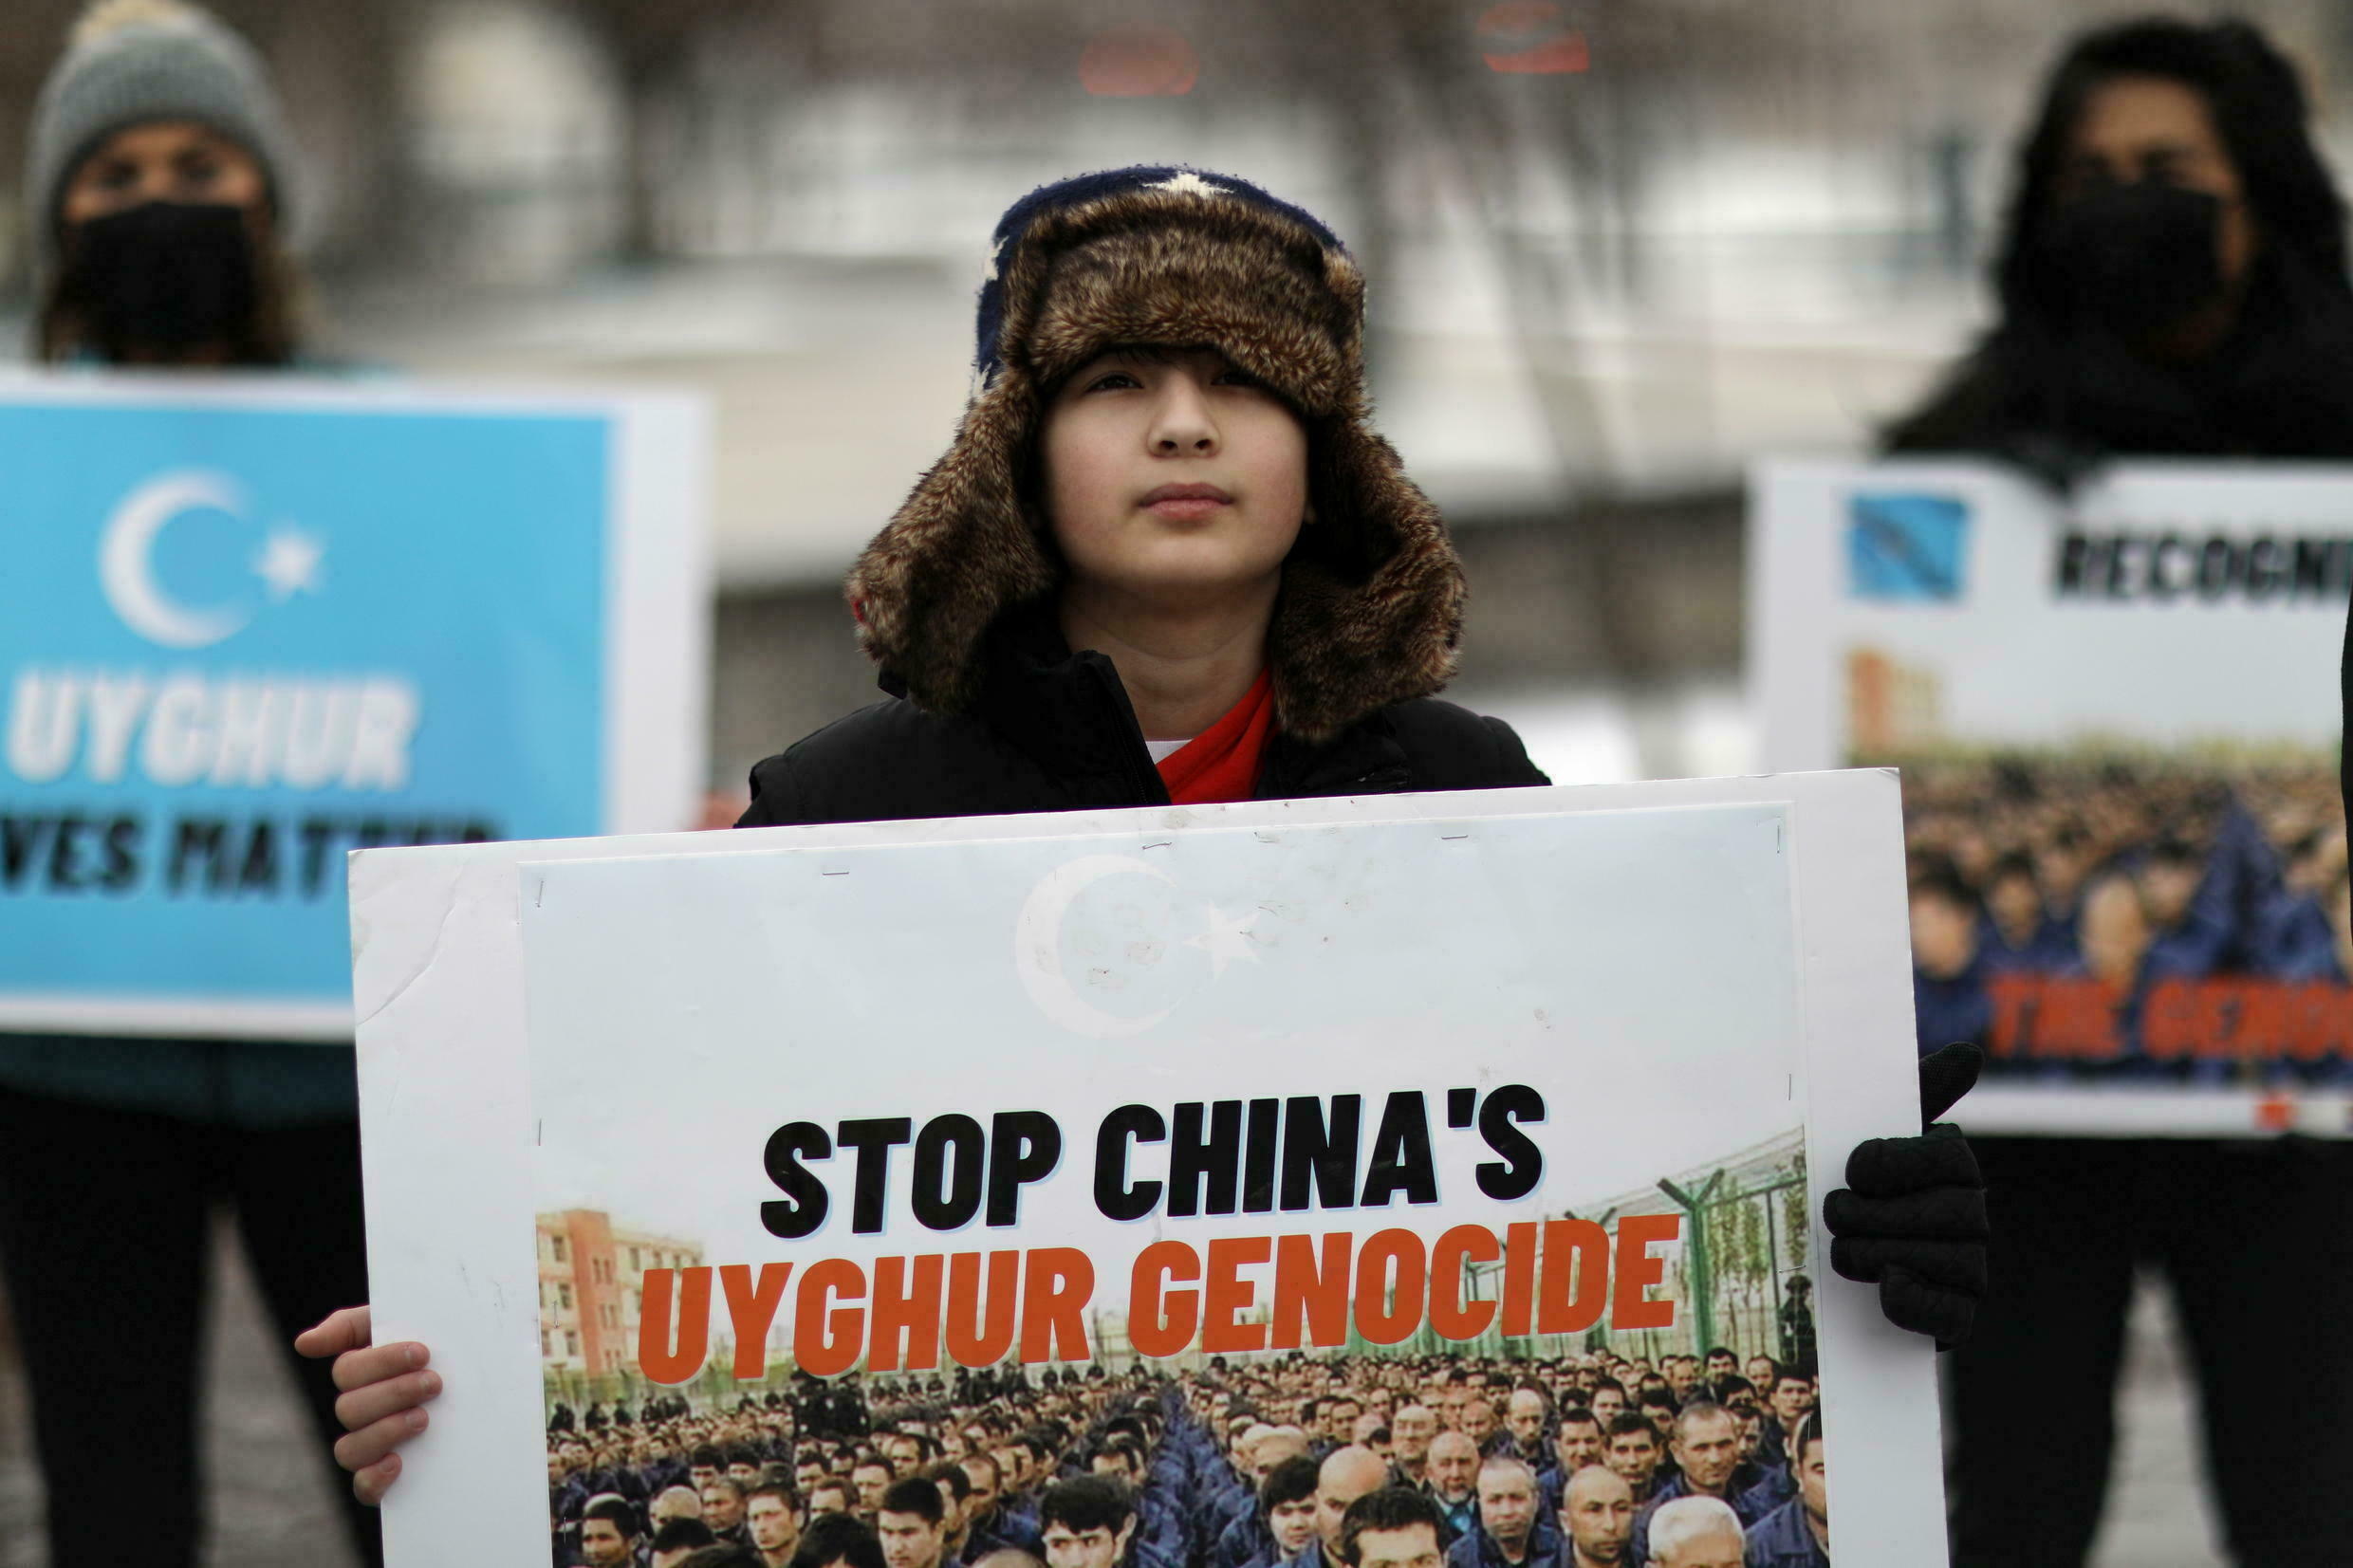 Manifestation pour encourager le Canada et d'autres pays à dénoncer un "génocide" contre les ouïghours au Xinjiang, devant l'ambassade canadienne à Washington, le 19 février 2021. (Source : France 24)